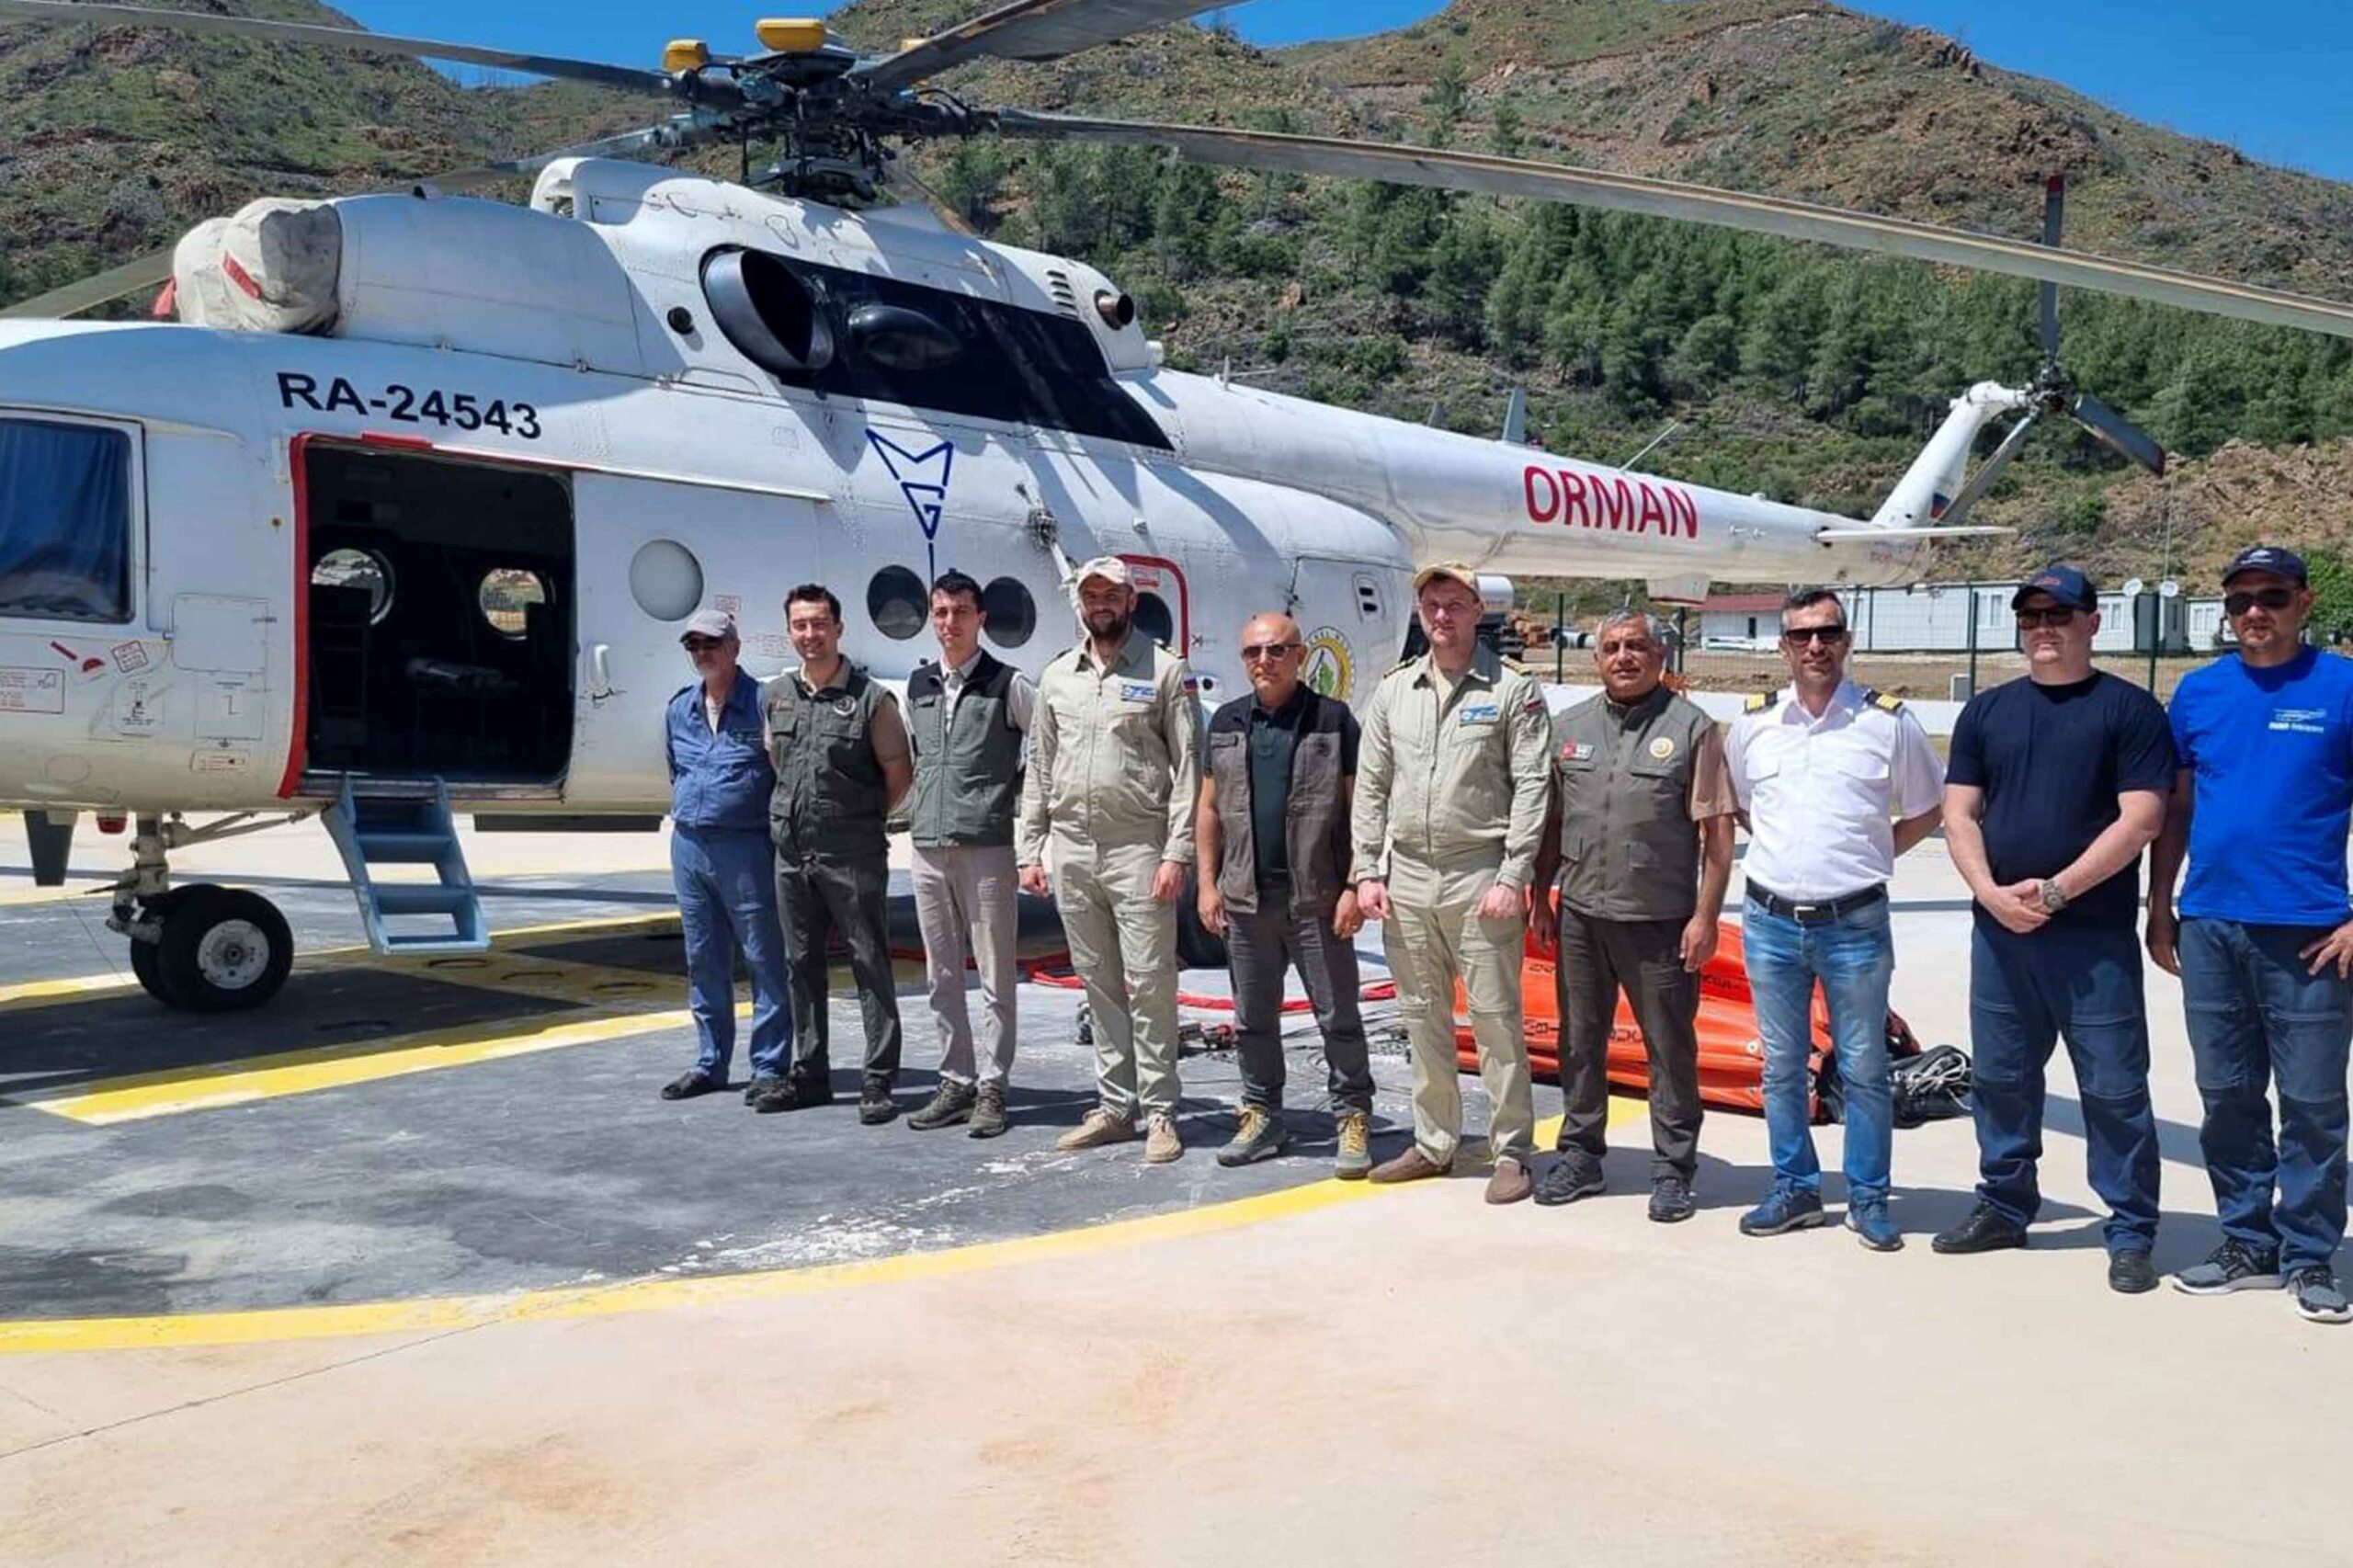 Muğla’da İlk Yangın Helikopteri Göreve Başladı